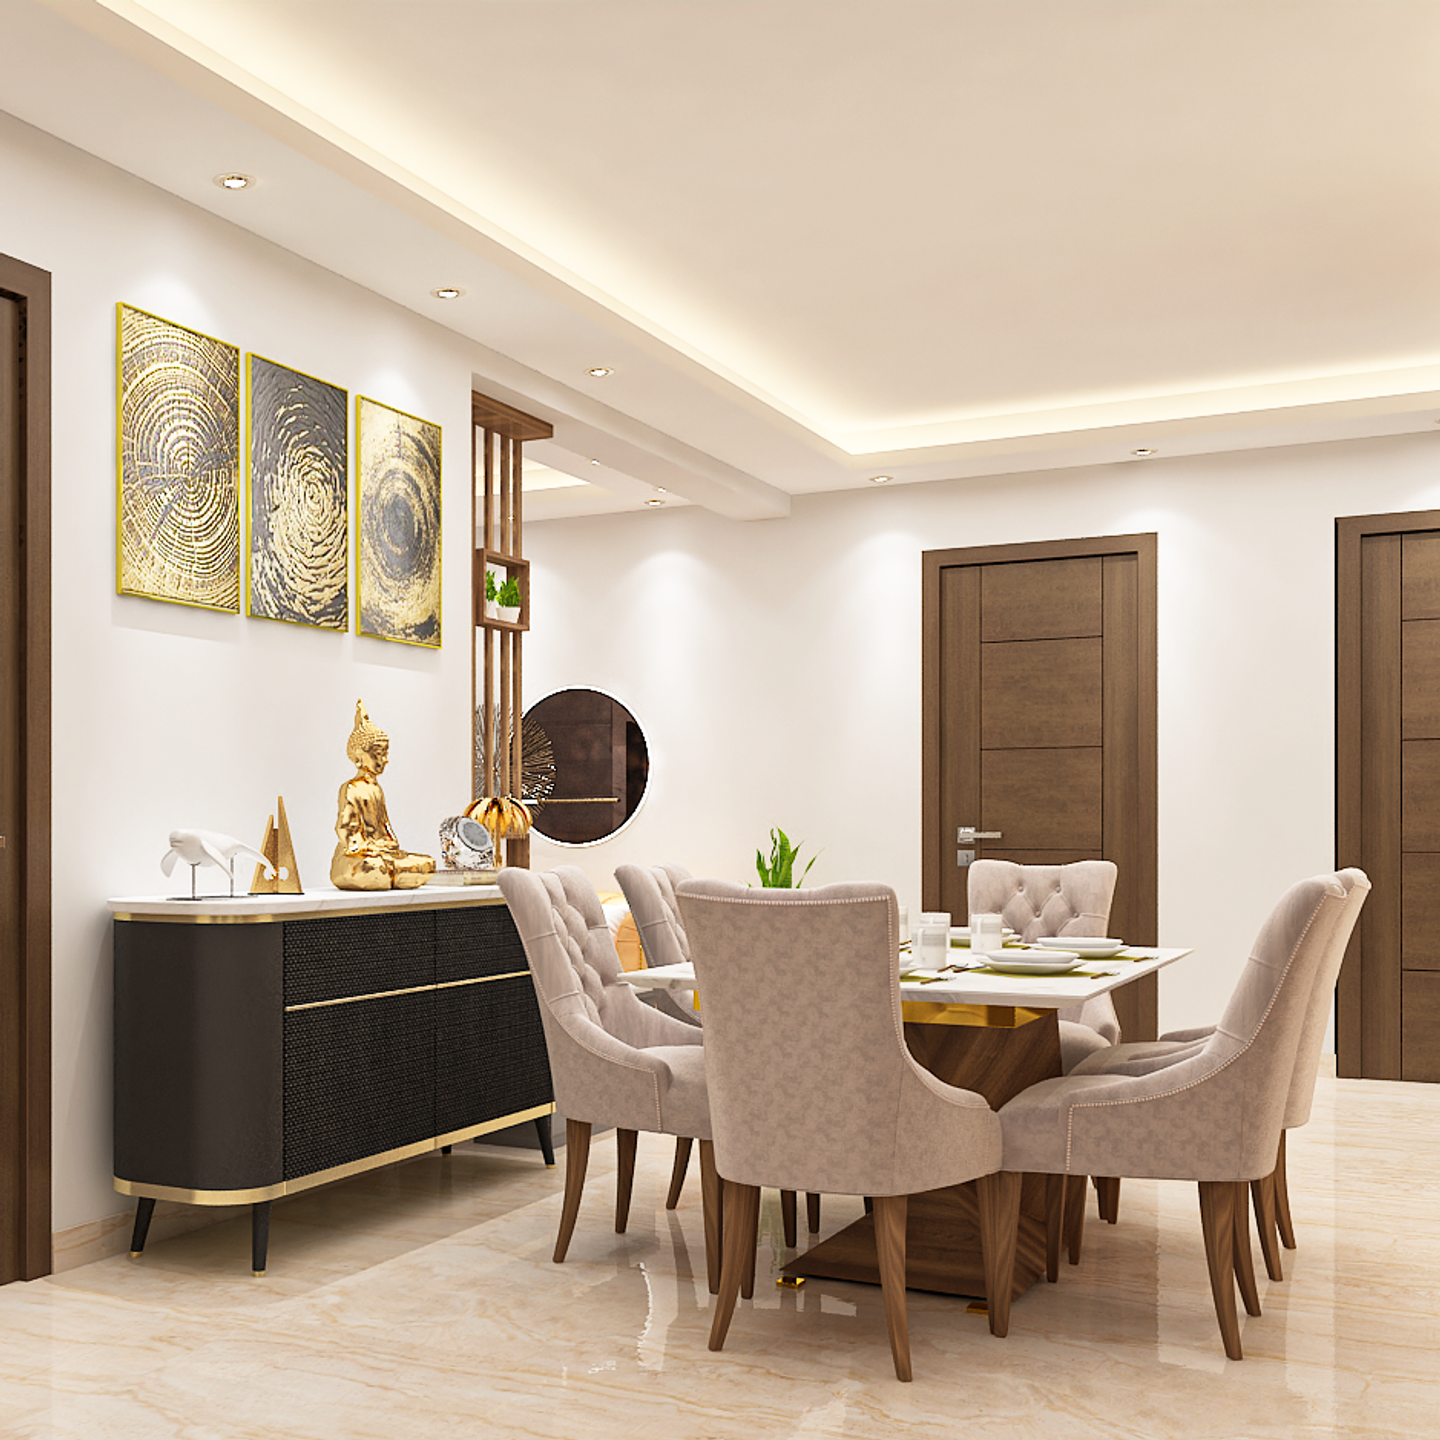 6-Seater Dining Room Design Idea - Livspace